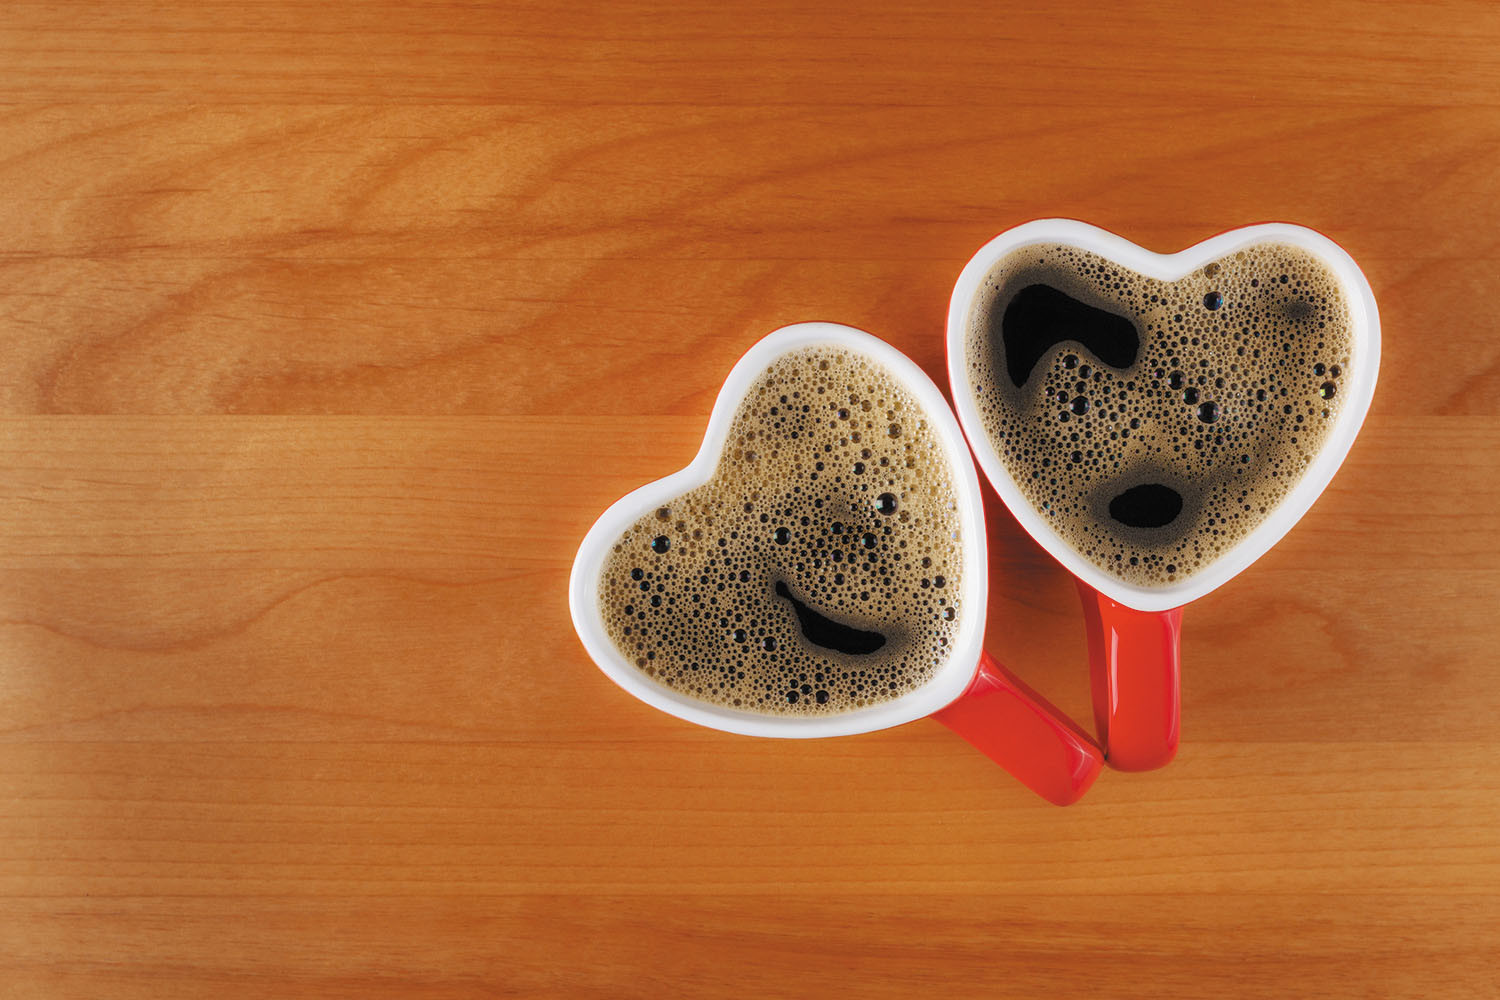 Nghiên cứu mới làm rõ mối liên hệ giữa việc uống cà phê và nguy cơ mắc bệnh tim  - Ảnh 1.